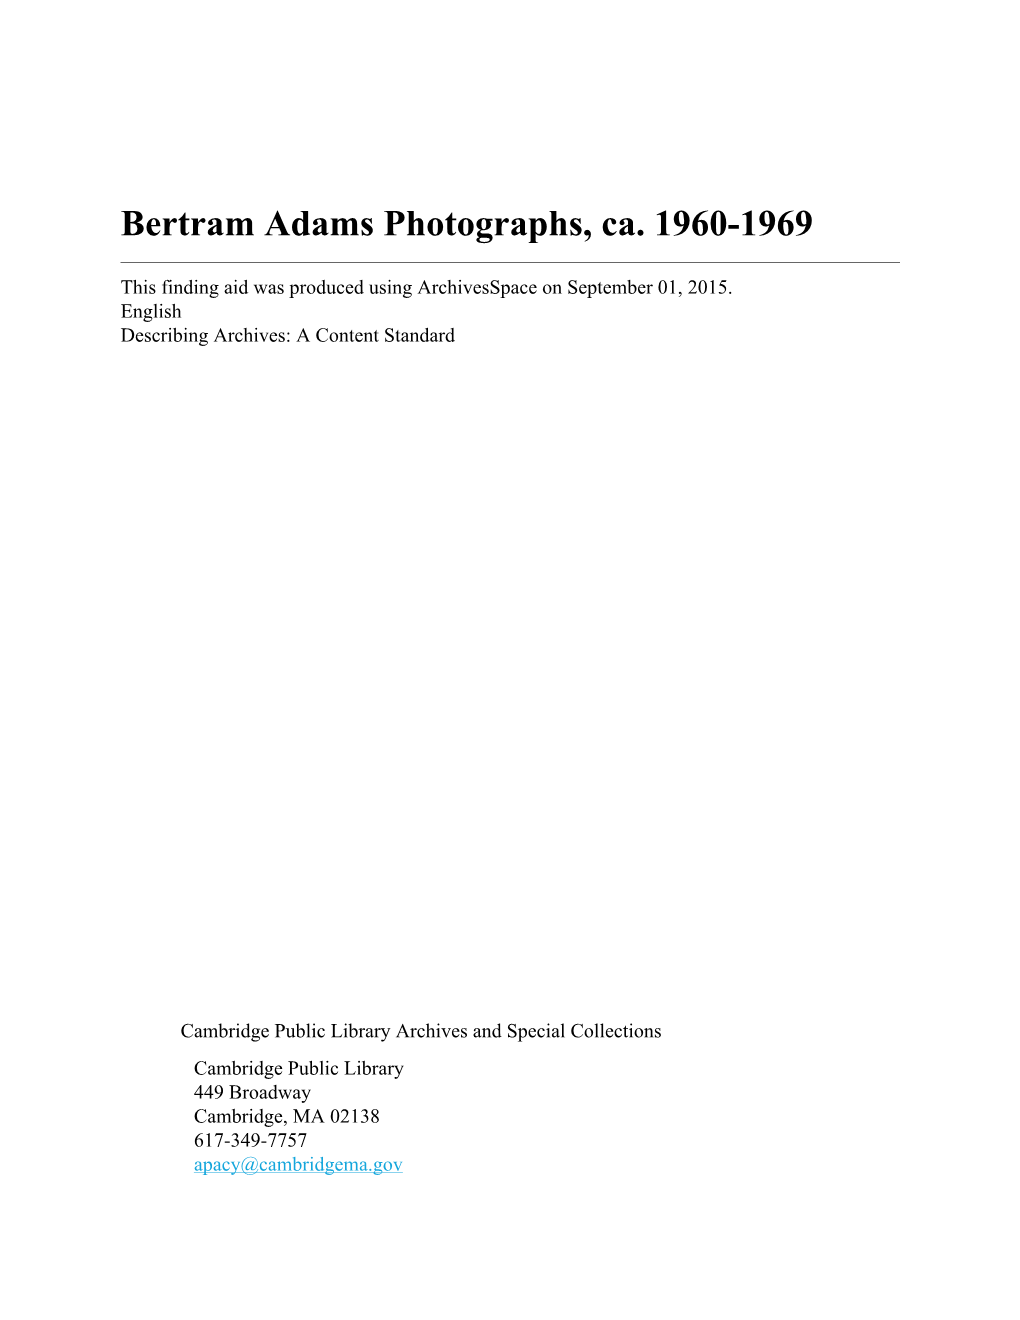 Bertram Adams Photographs, Ca. 1960-1969